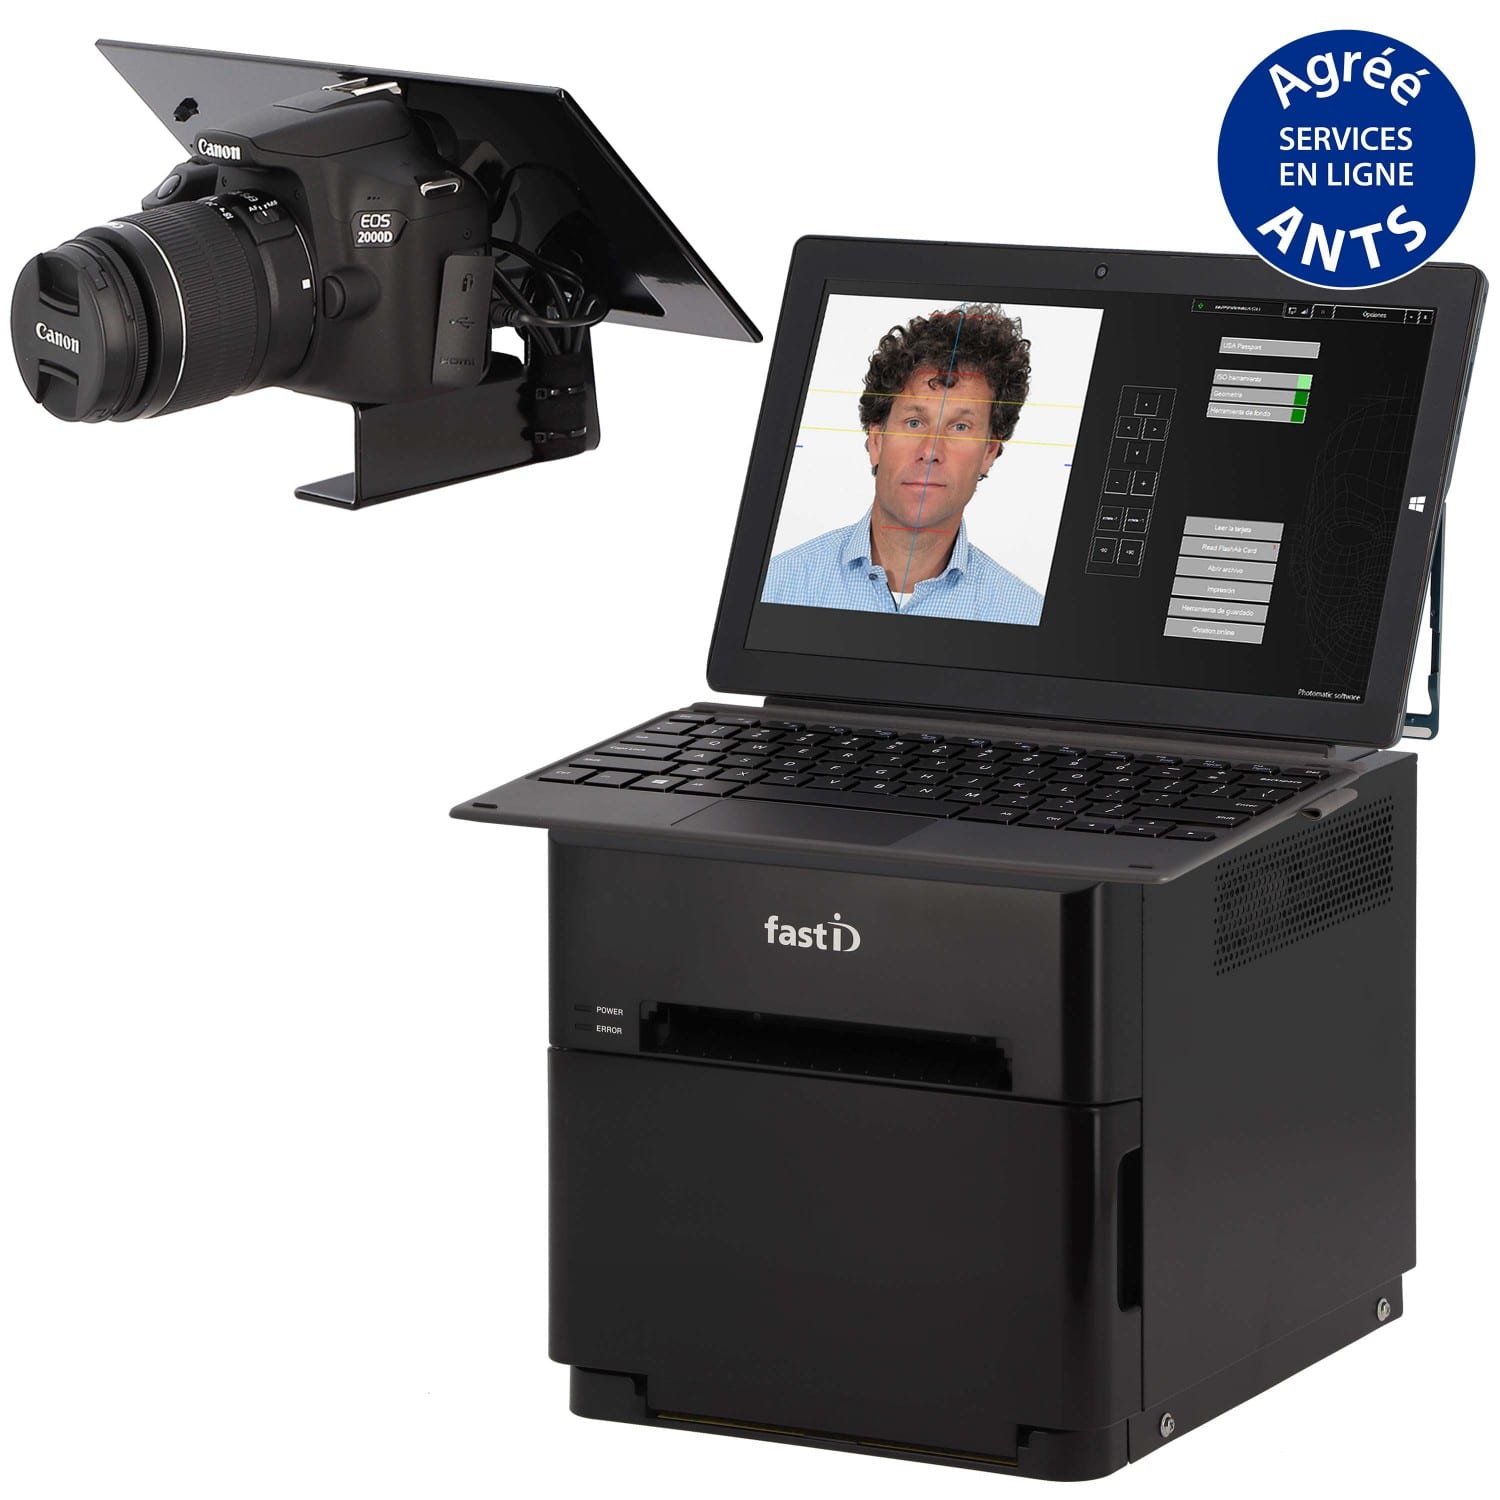 Kiosk photo identité FastID - Imprimante CZ-01 + tablette W11 + Canon 2000D  + câble 5m + support + logiciel biométrique Photomatic + consommable  (10400040) pour 300 tirages 10x15 cm